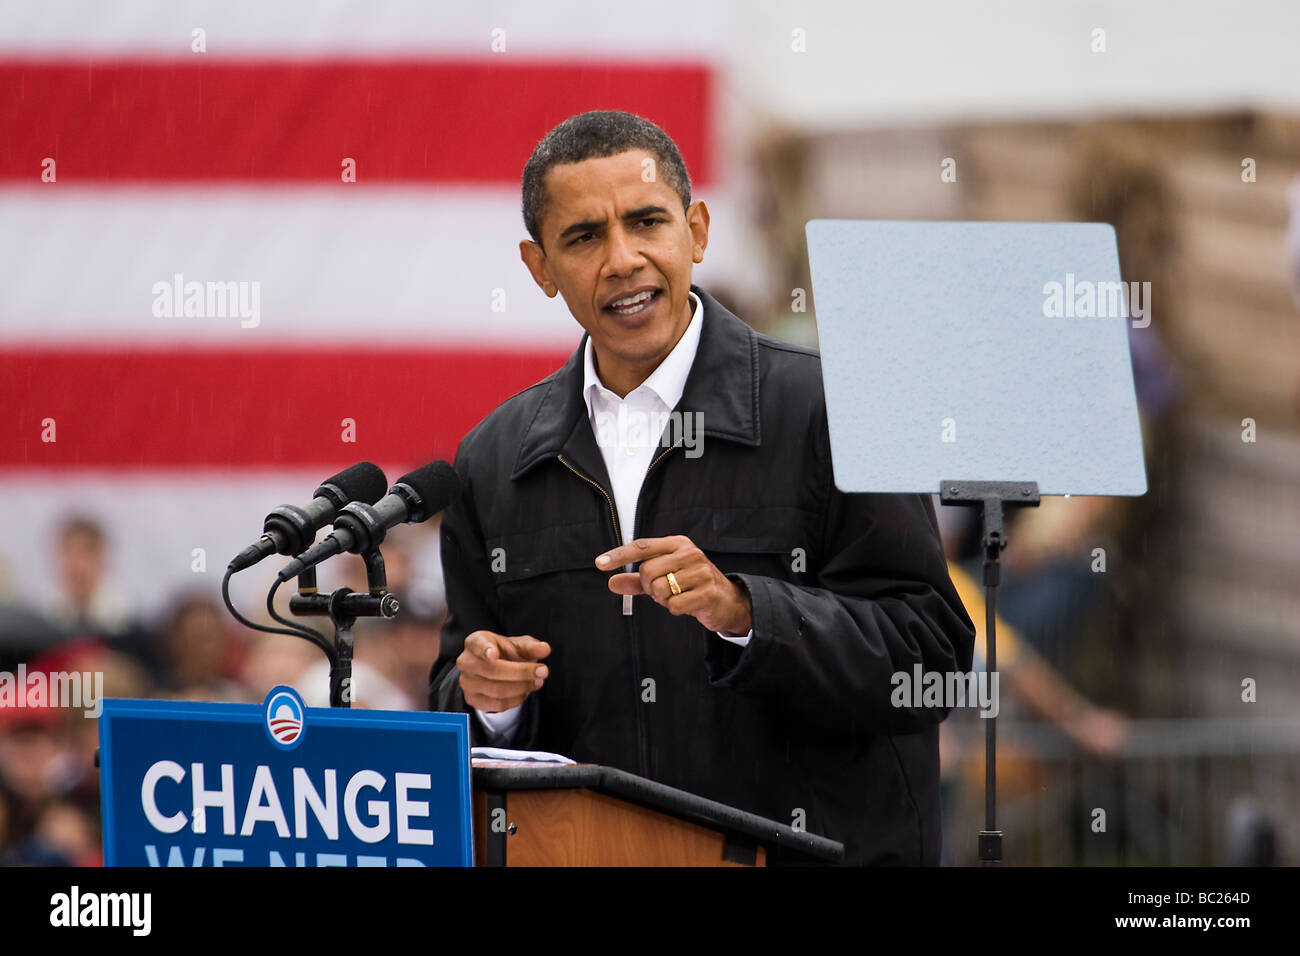 El candidato presidencial Barack Obama dando un discurso a sus partidarios en Londonderry, NH. Foto de stock